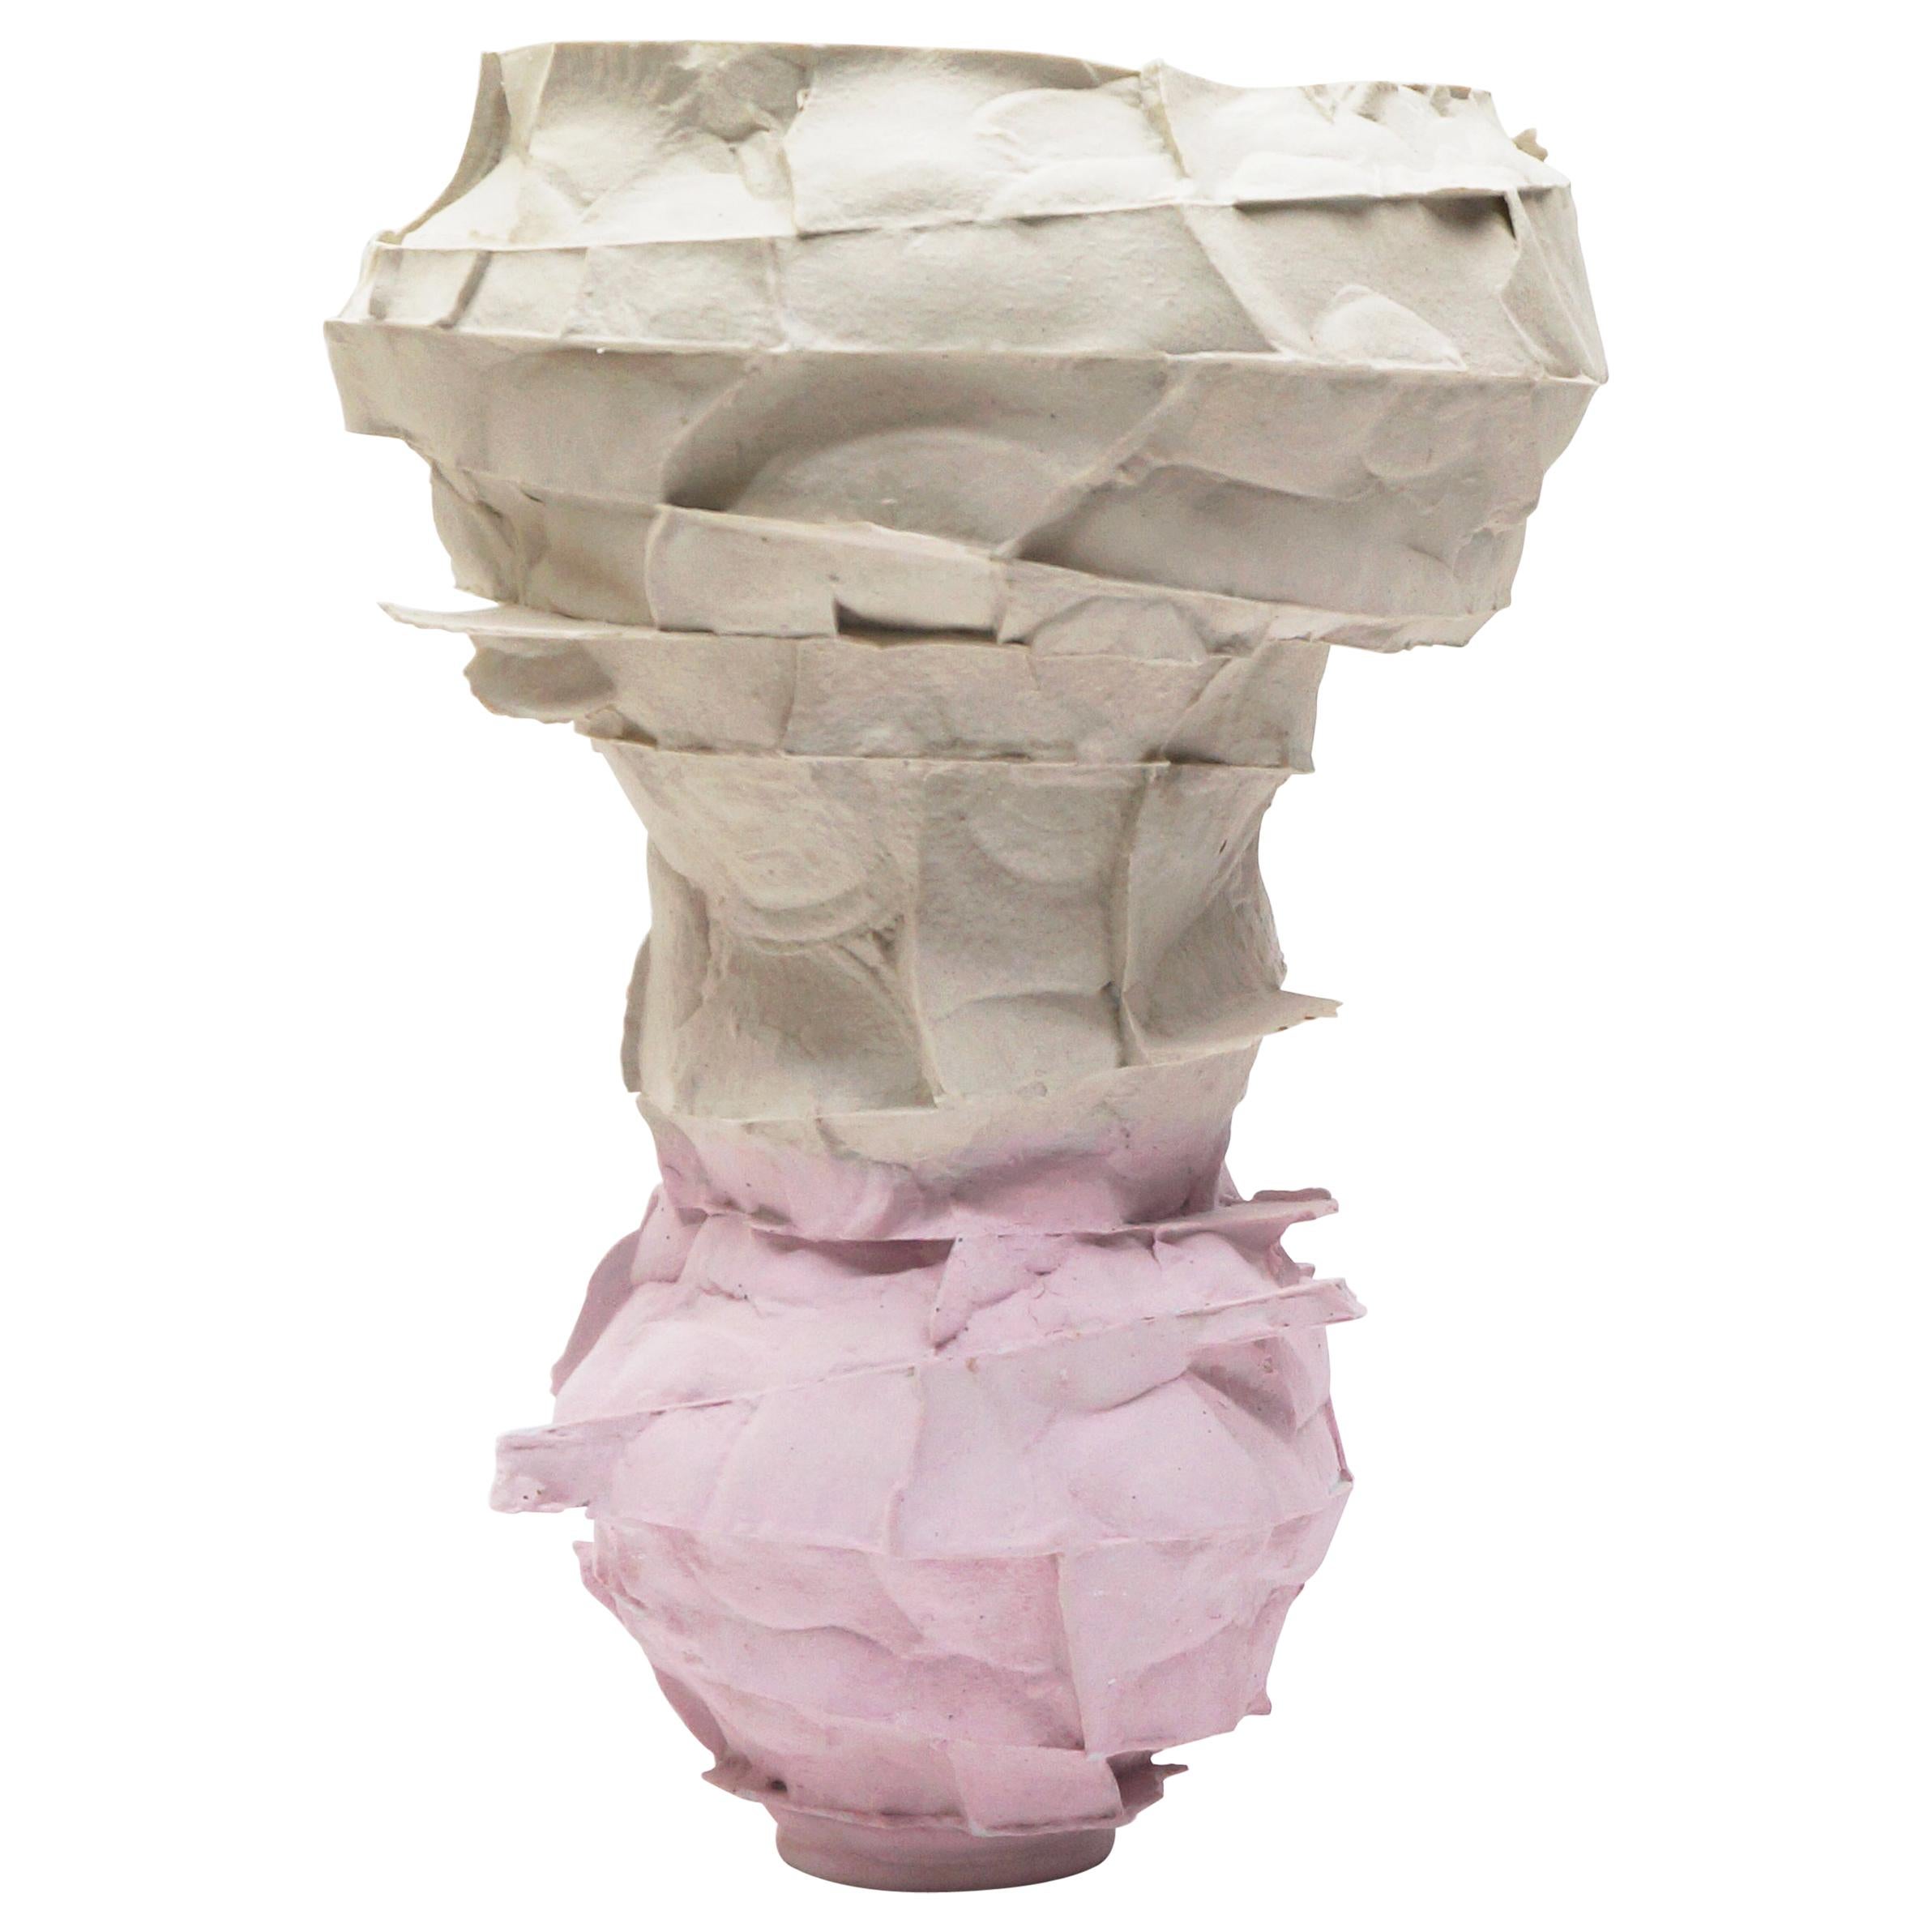 Porcelain Vase by Monika Patuszyńska